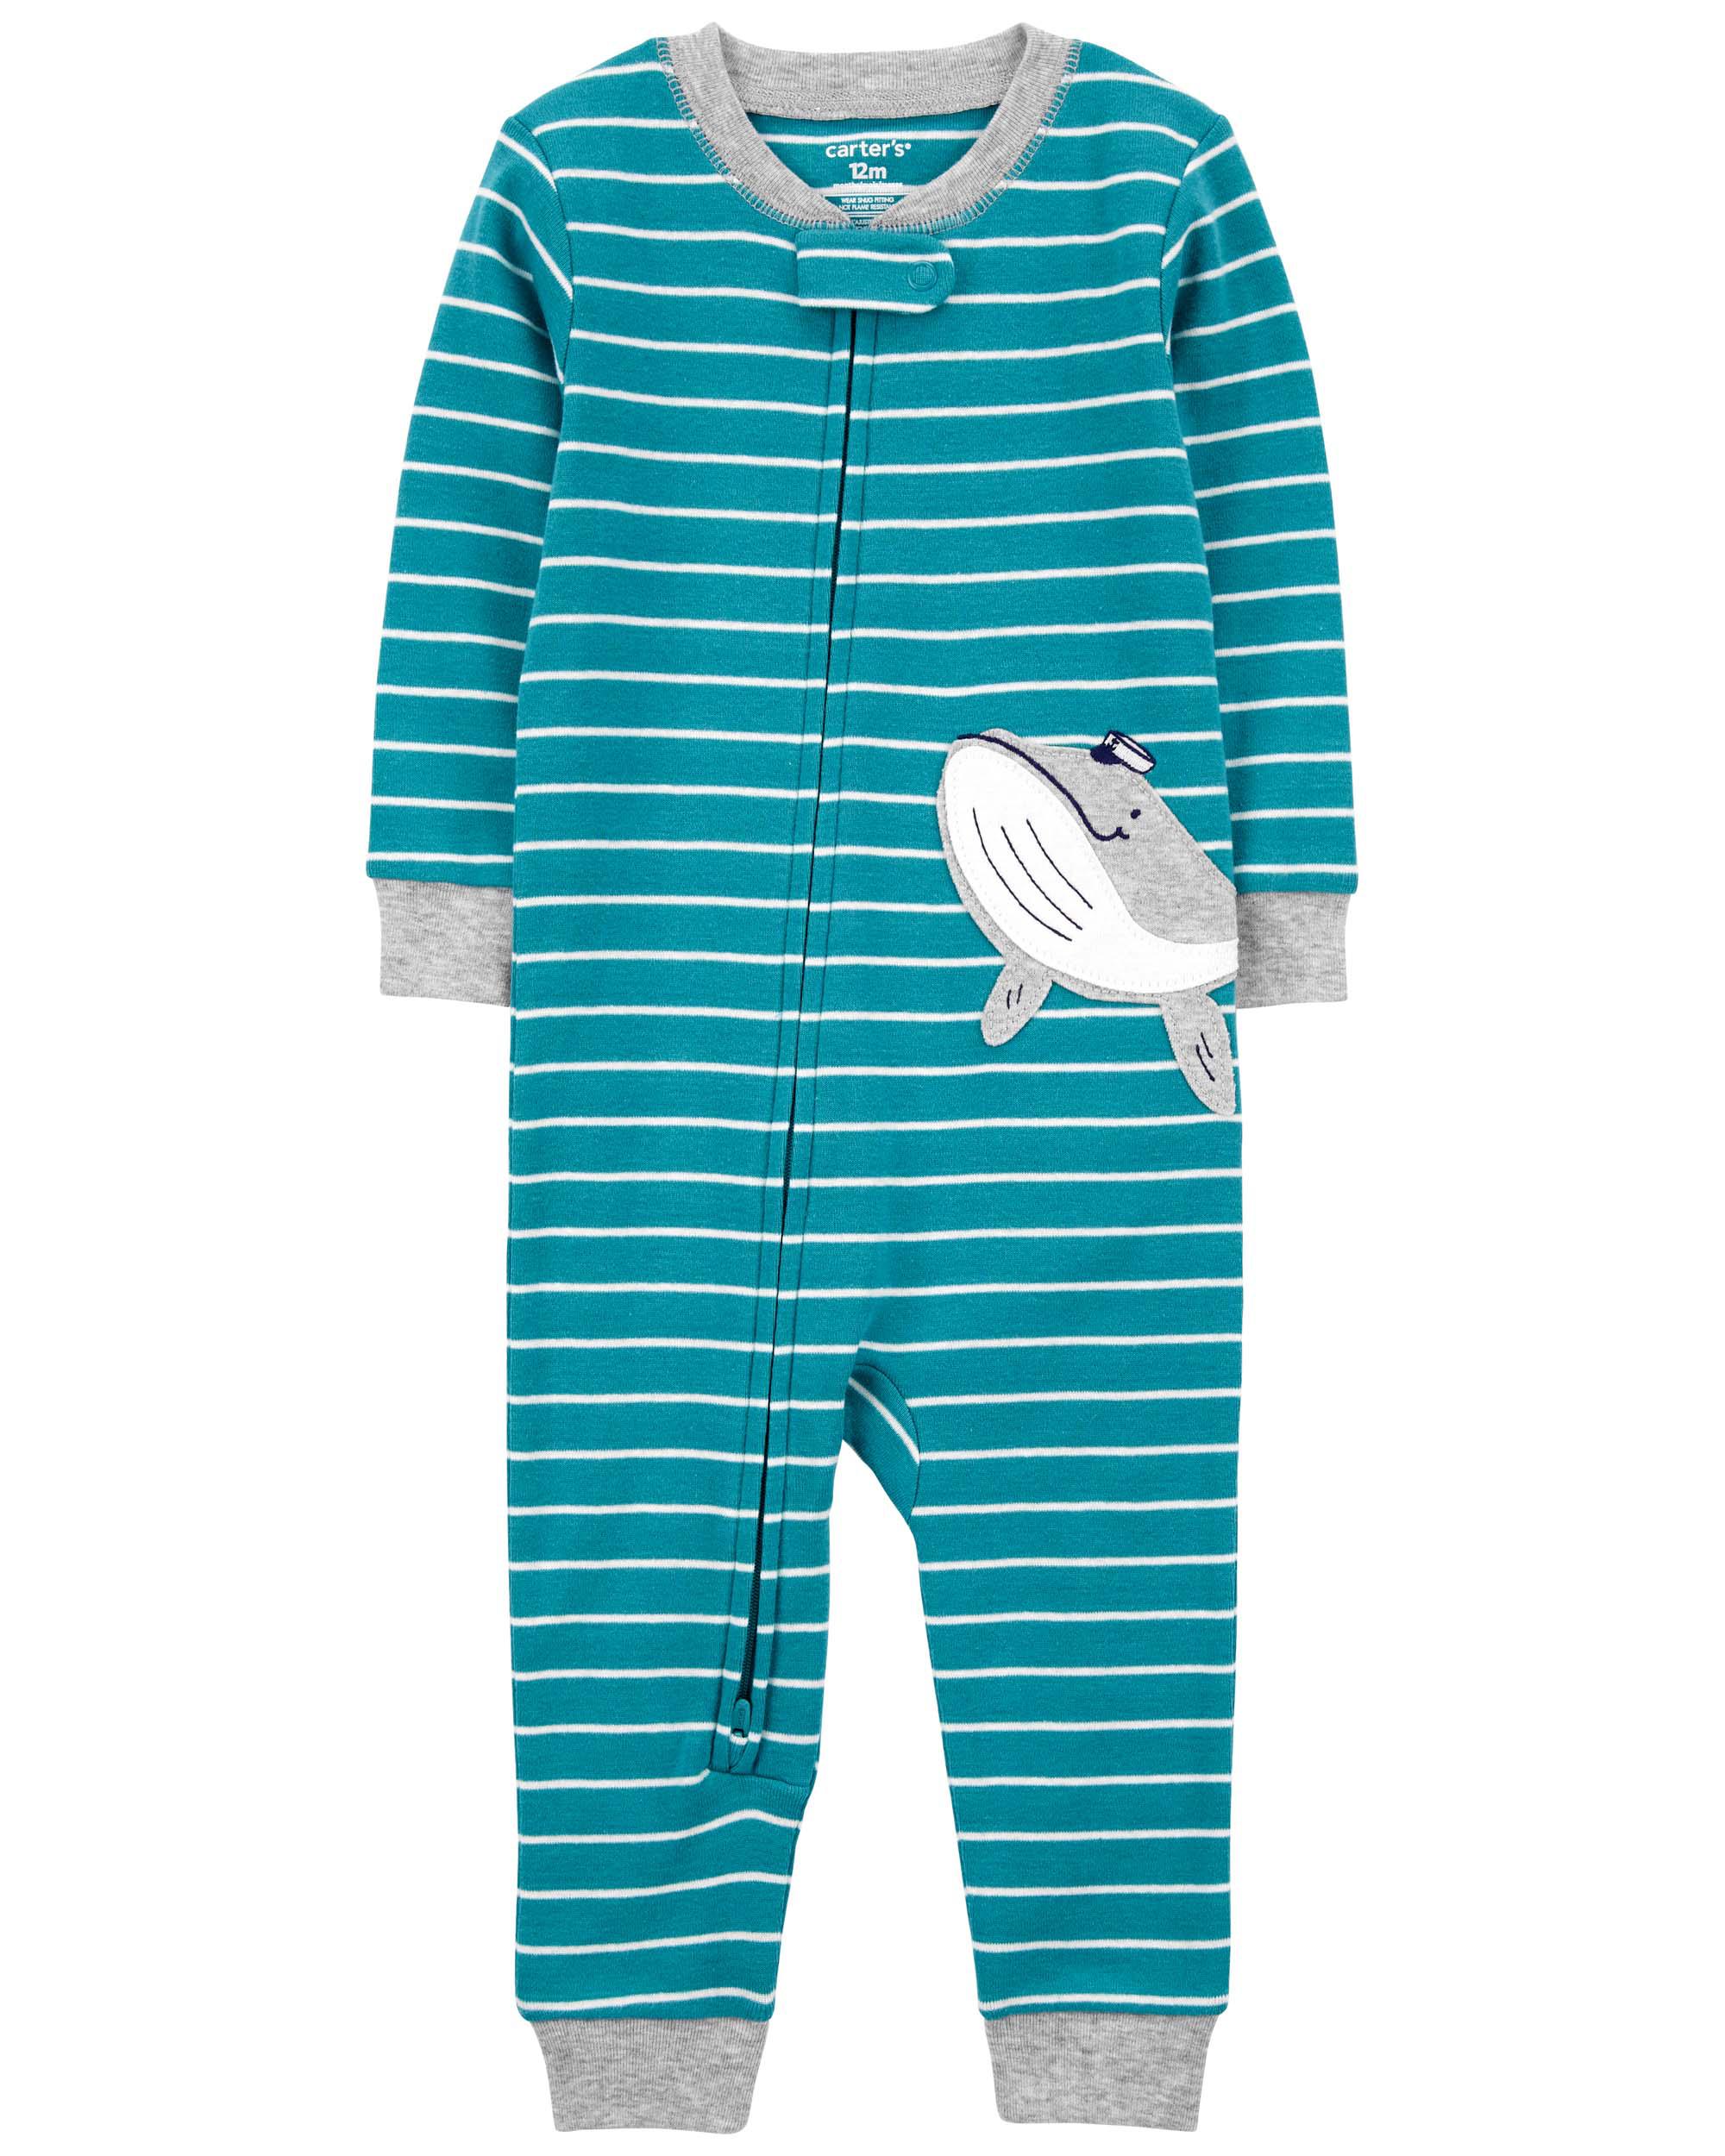 Carter's Toddler Girl's Blue Princess Cotton Footless Pajama